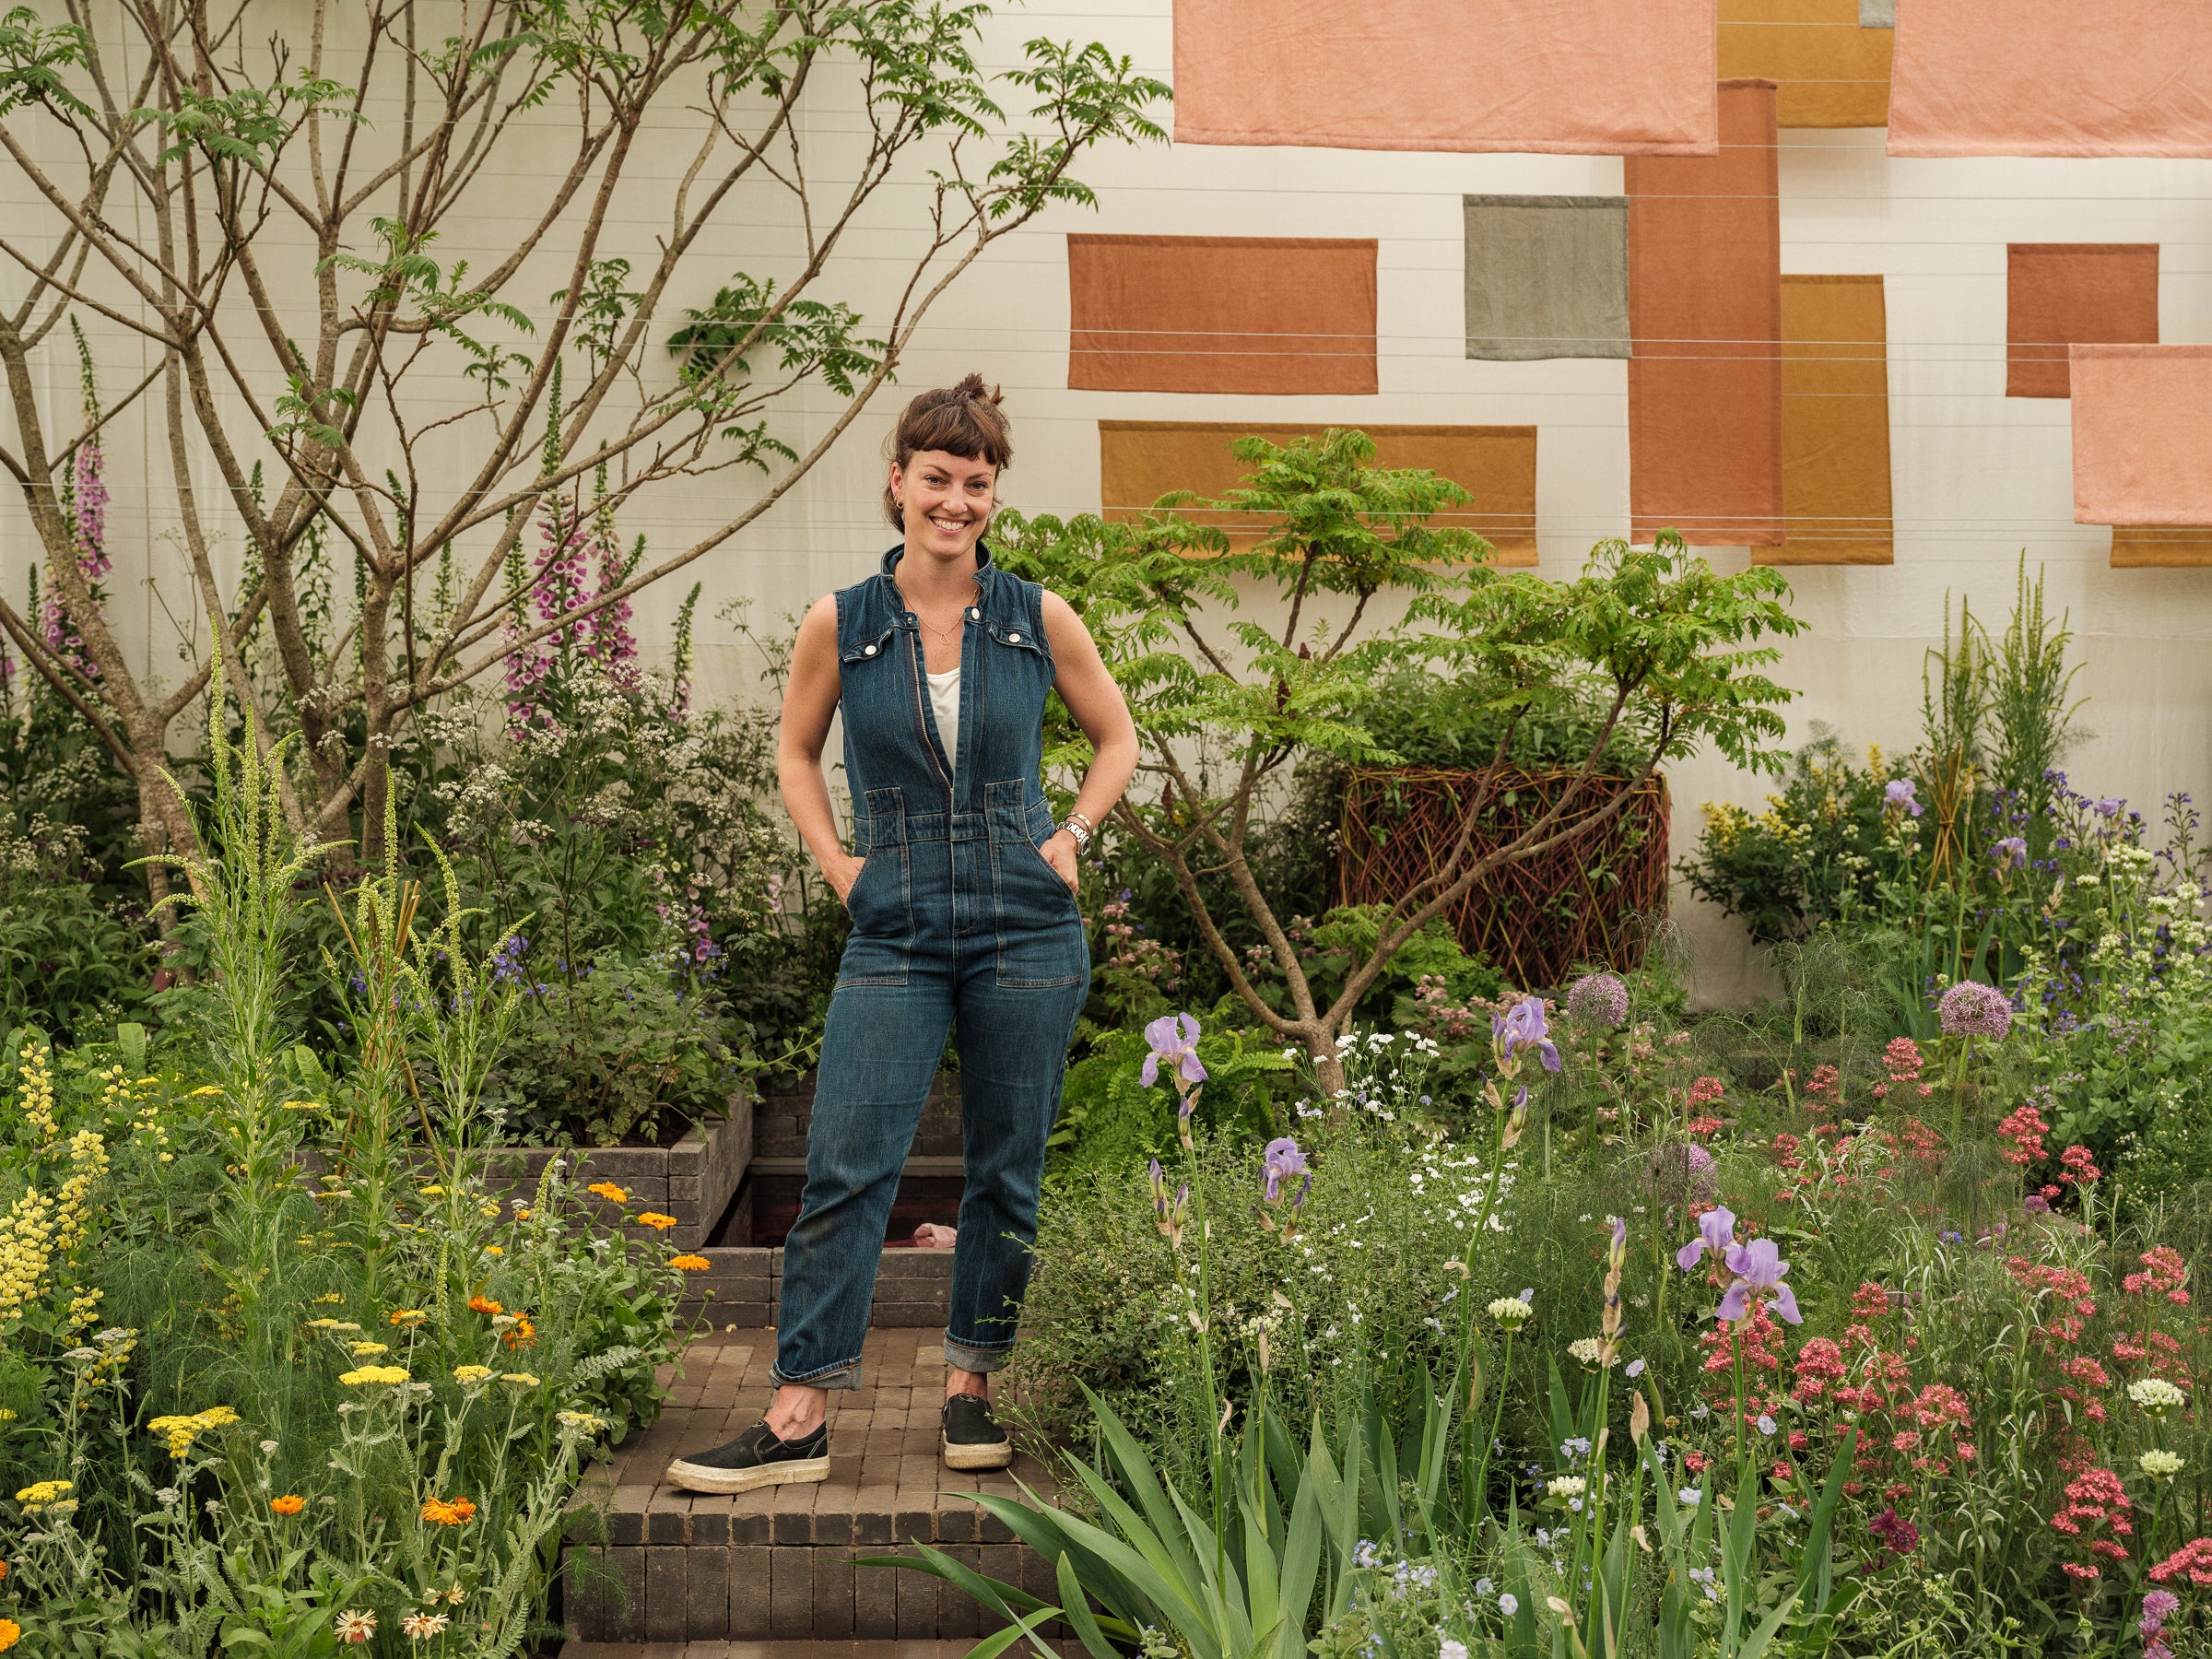 <p>Horticulturalist Lottie Delamain in her garden at Chelsea Flower Show</p>